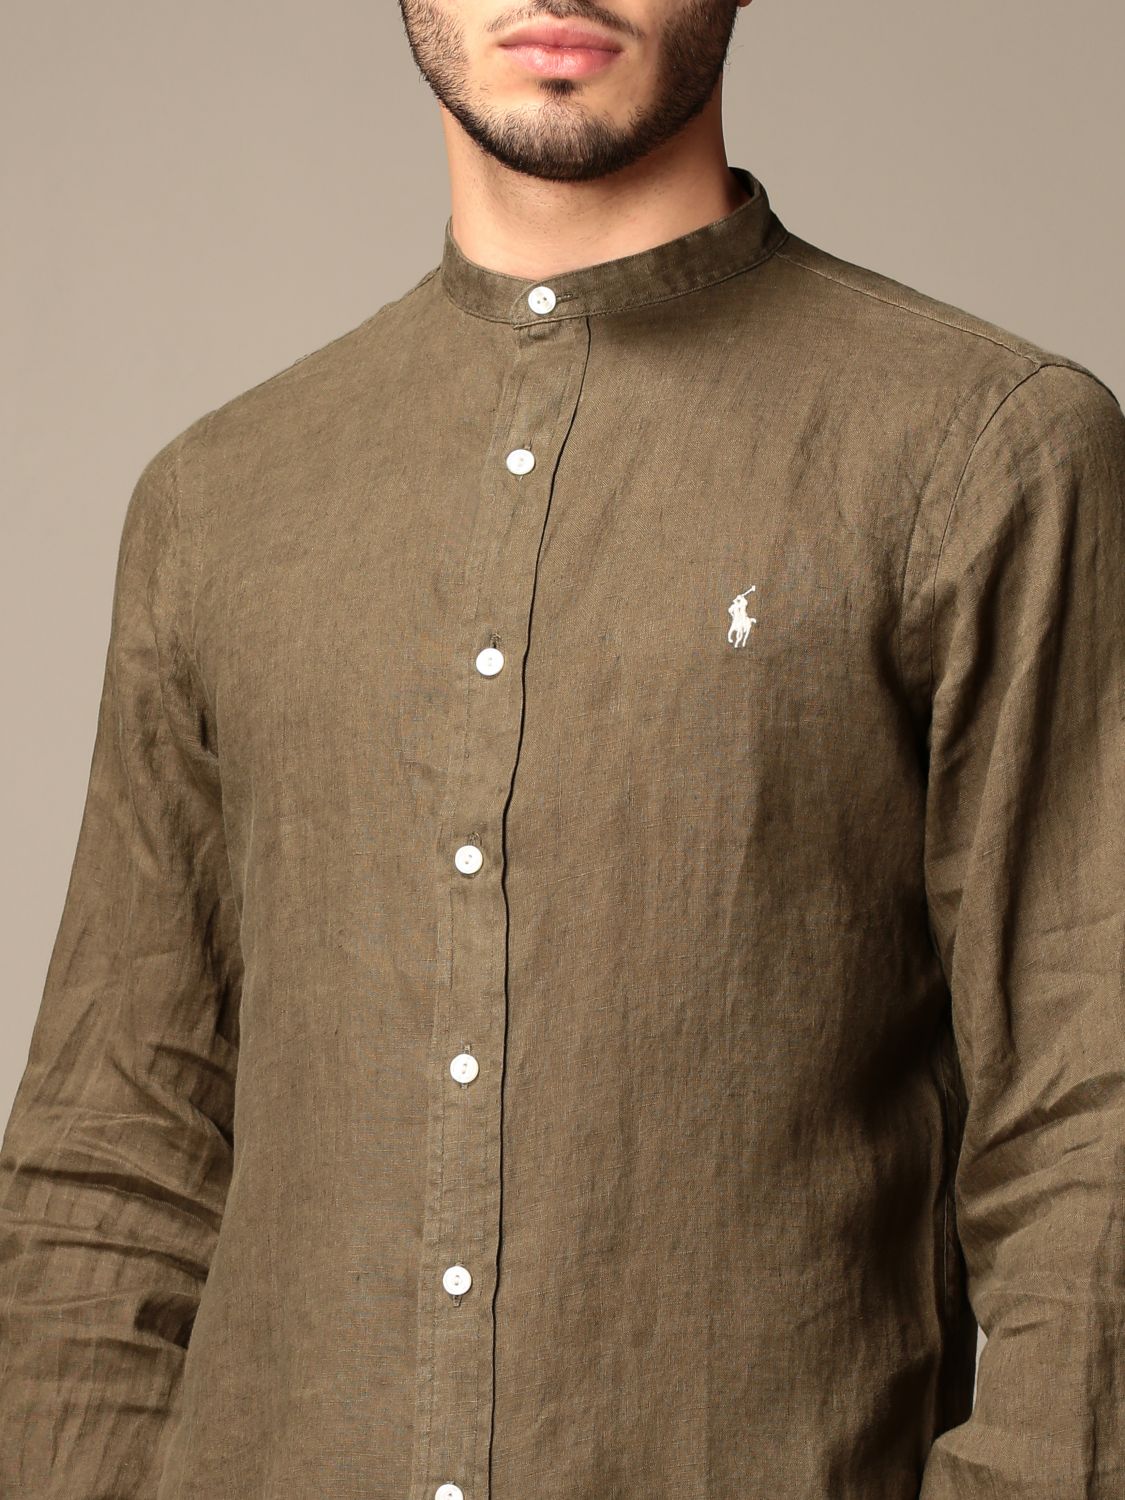 Polo Ralph Lauren shirt in linen with mandarin collar